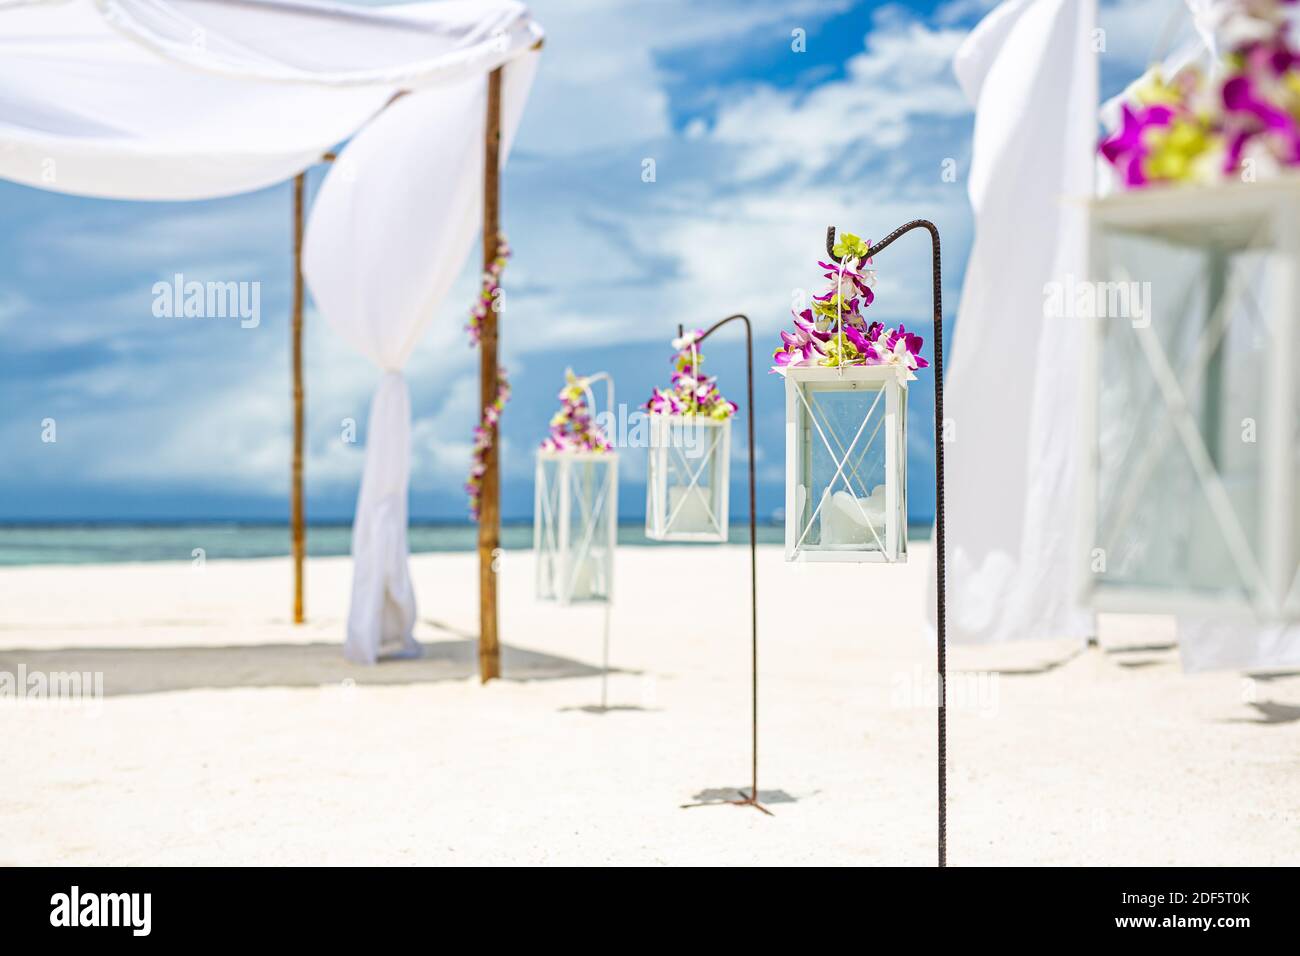 Cérémonie romantique de mariage sur la plage, décoration romantique à fleurs et blanches. Mariage de destination, lune de miel ou célébration d'anniversaire, décor de plage Banque D'Images